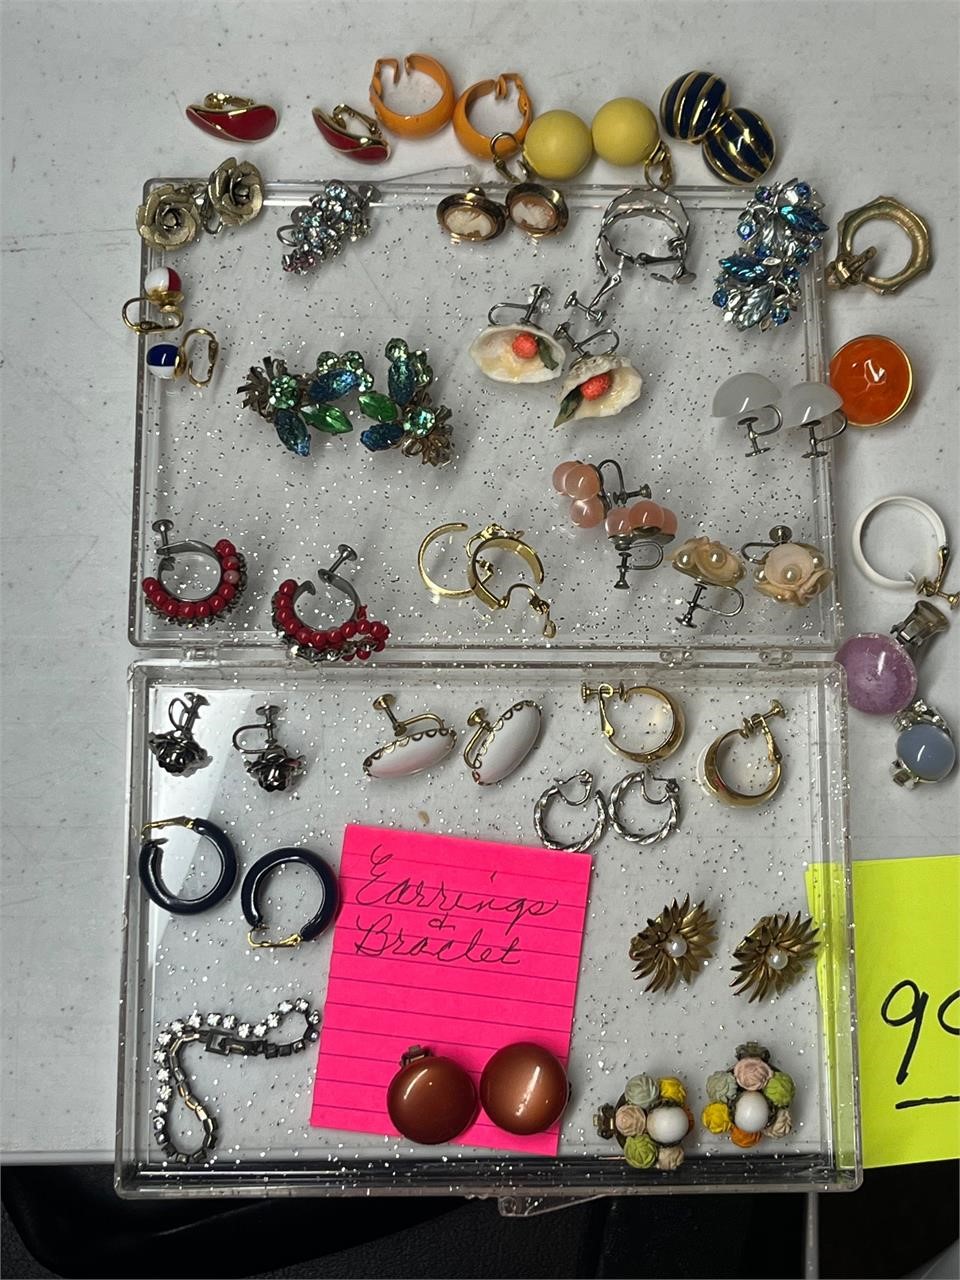 Several vintage earrings